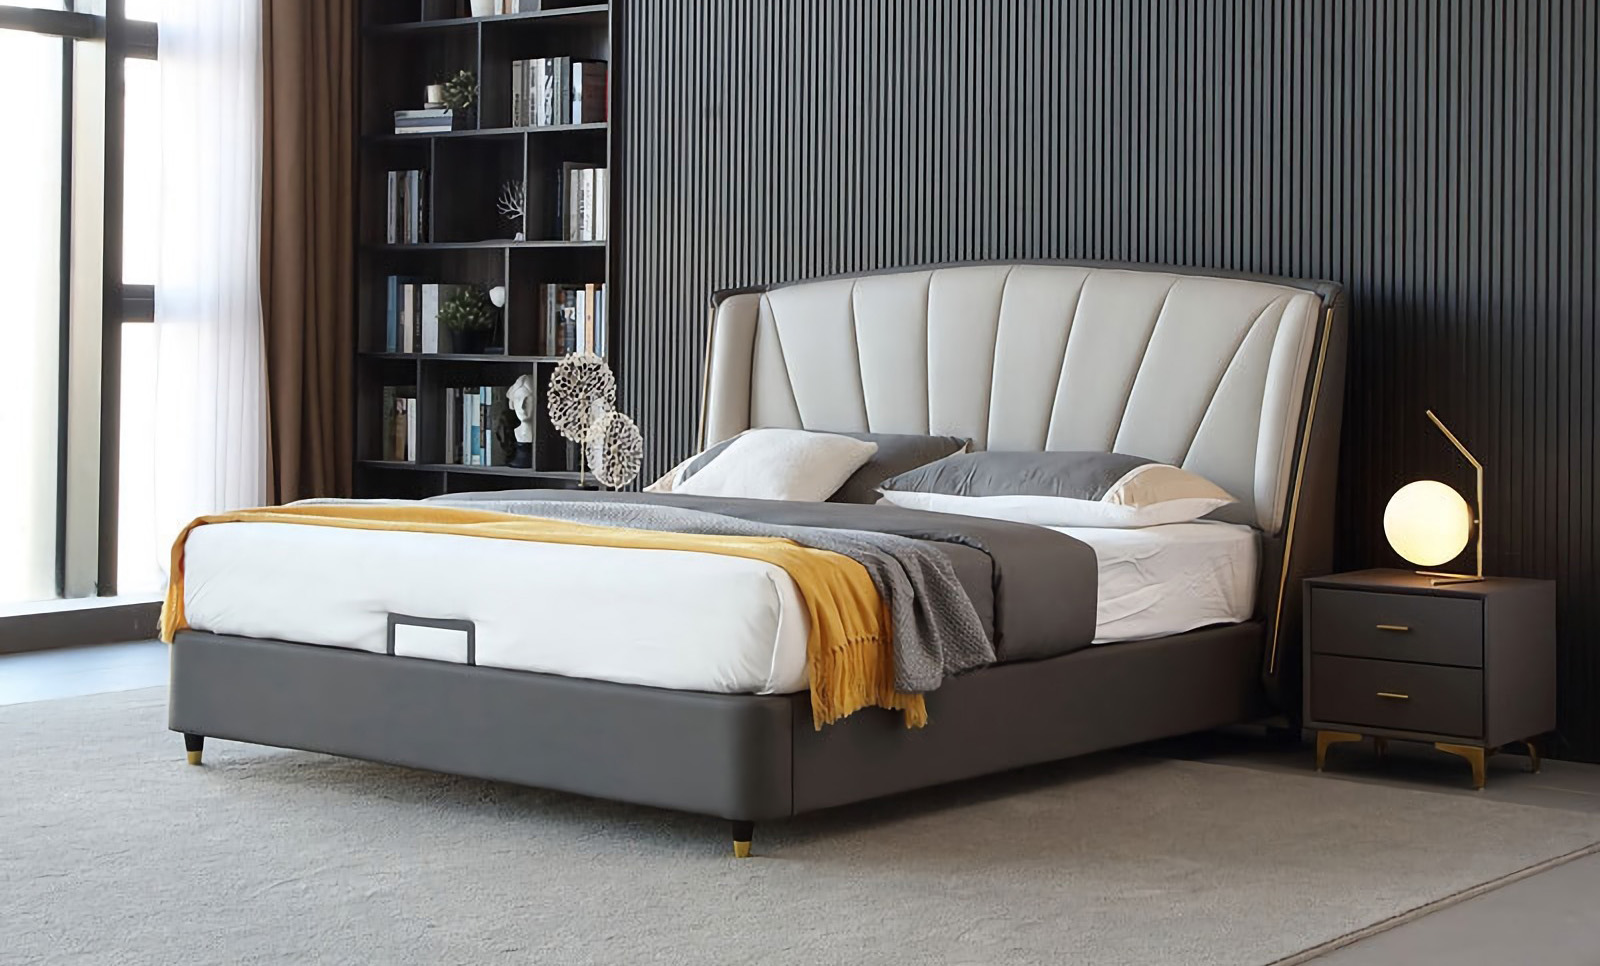 Modern minimalista ágy kialakítás A modern minimalista ágy jellemzői.